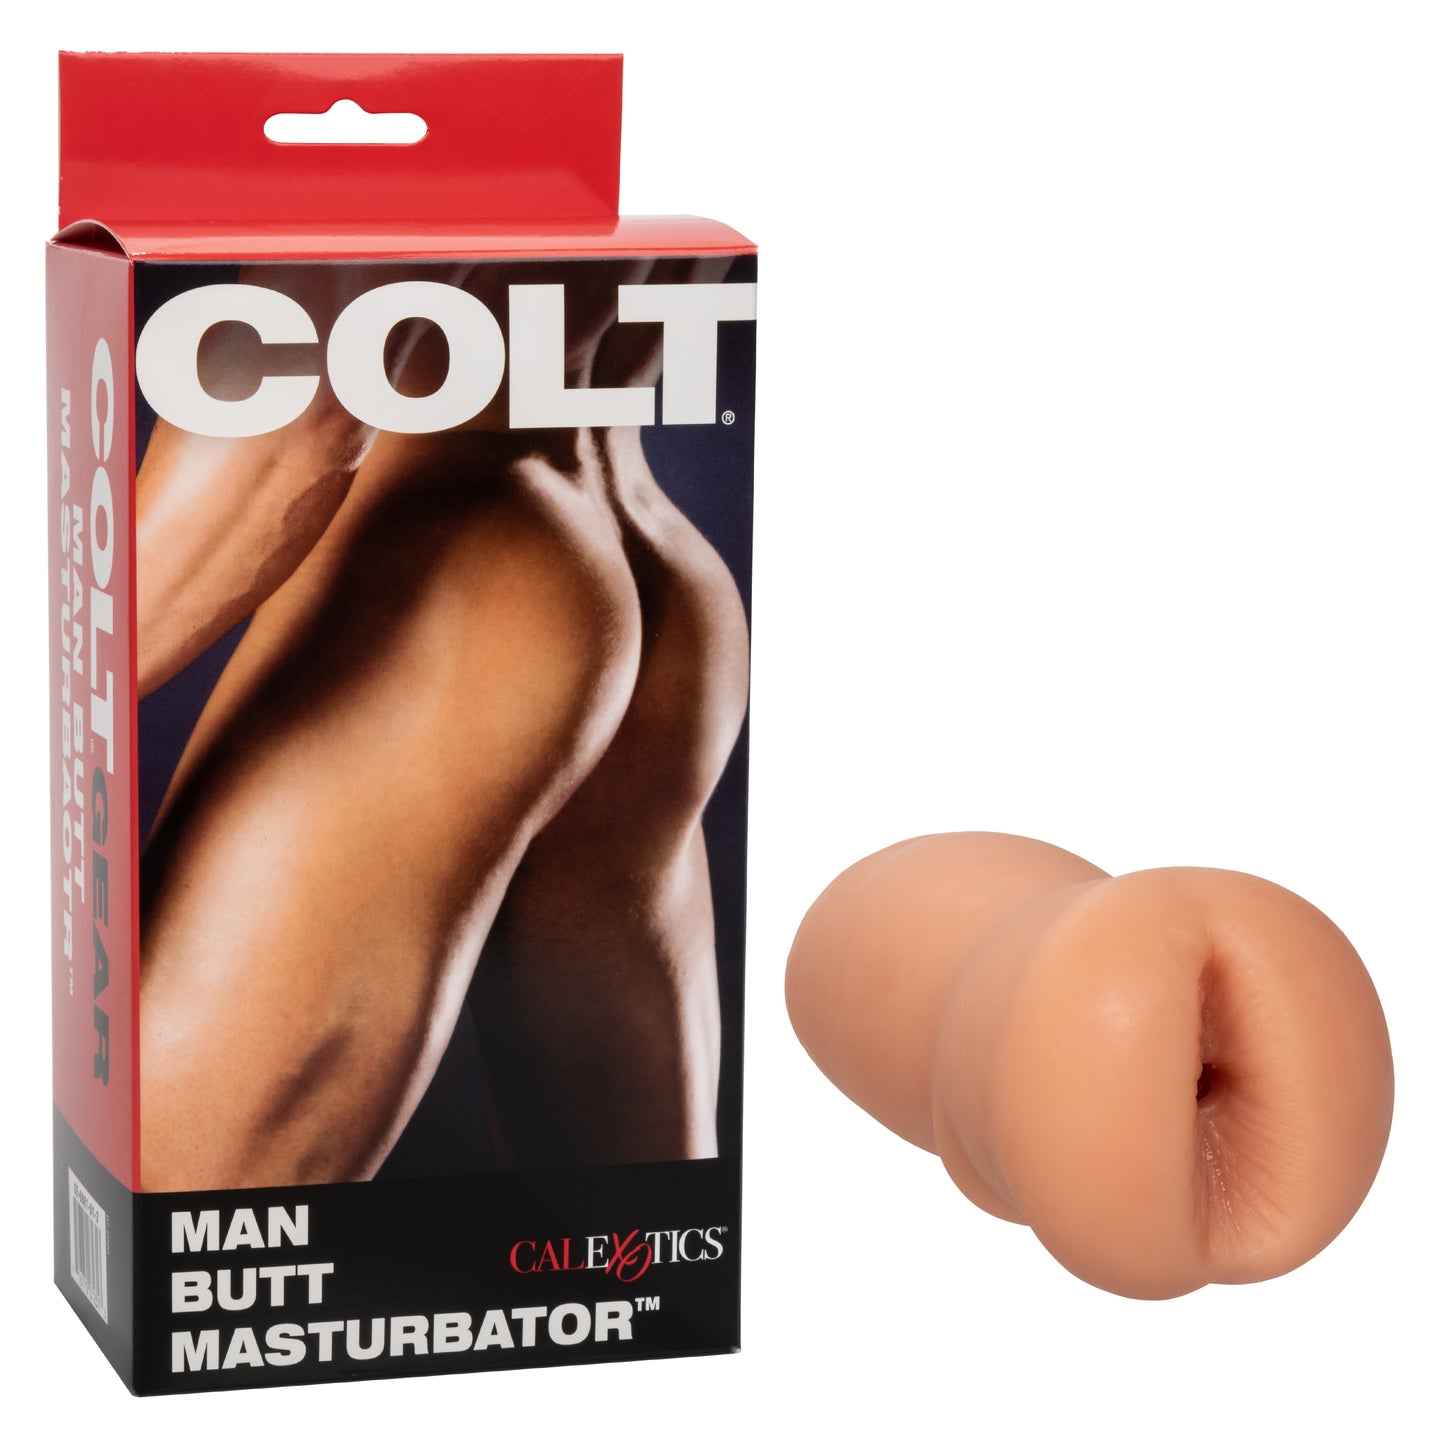 COLT® Man Butt™ Masturbator